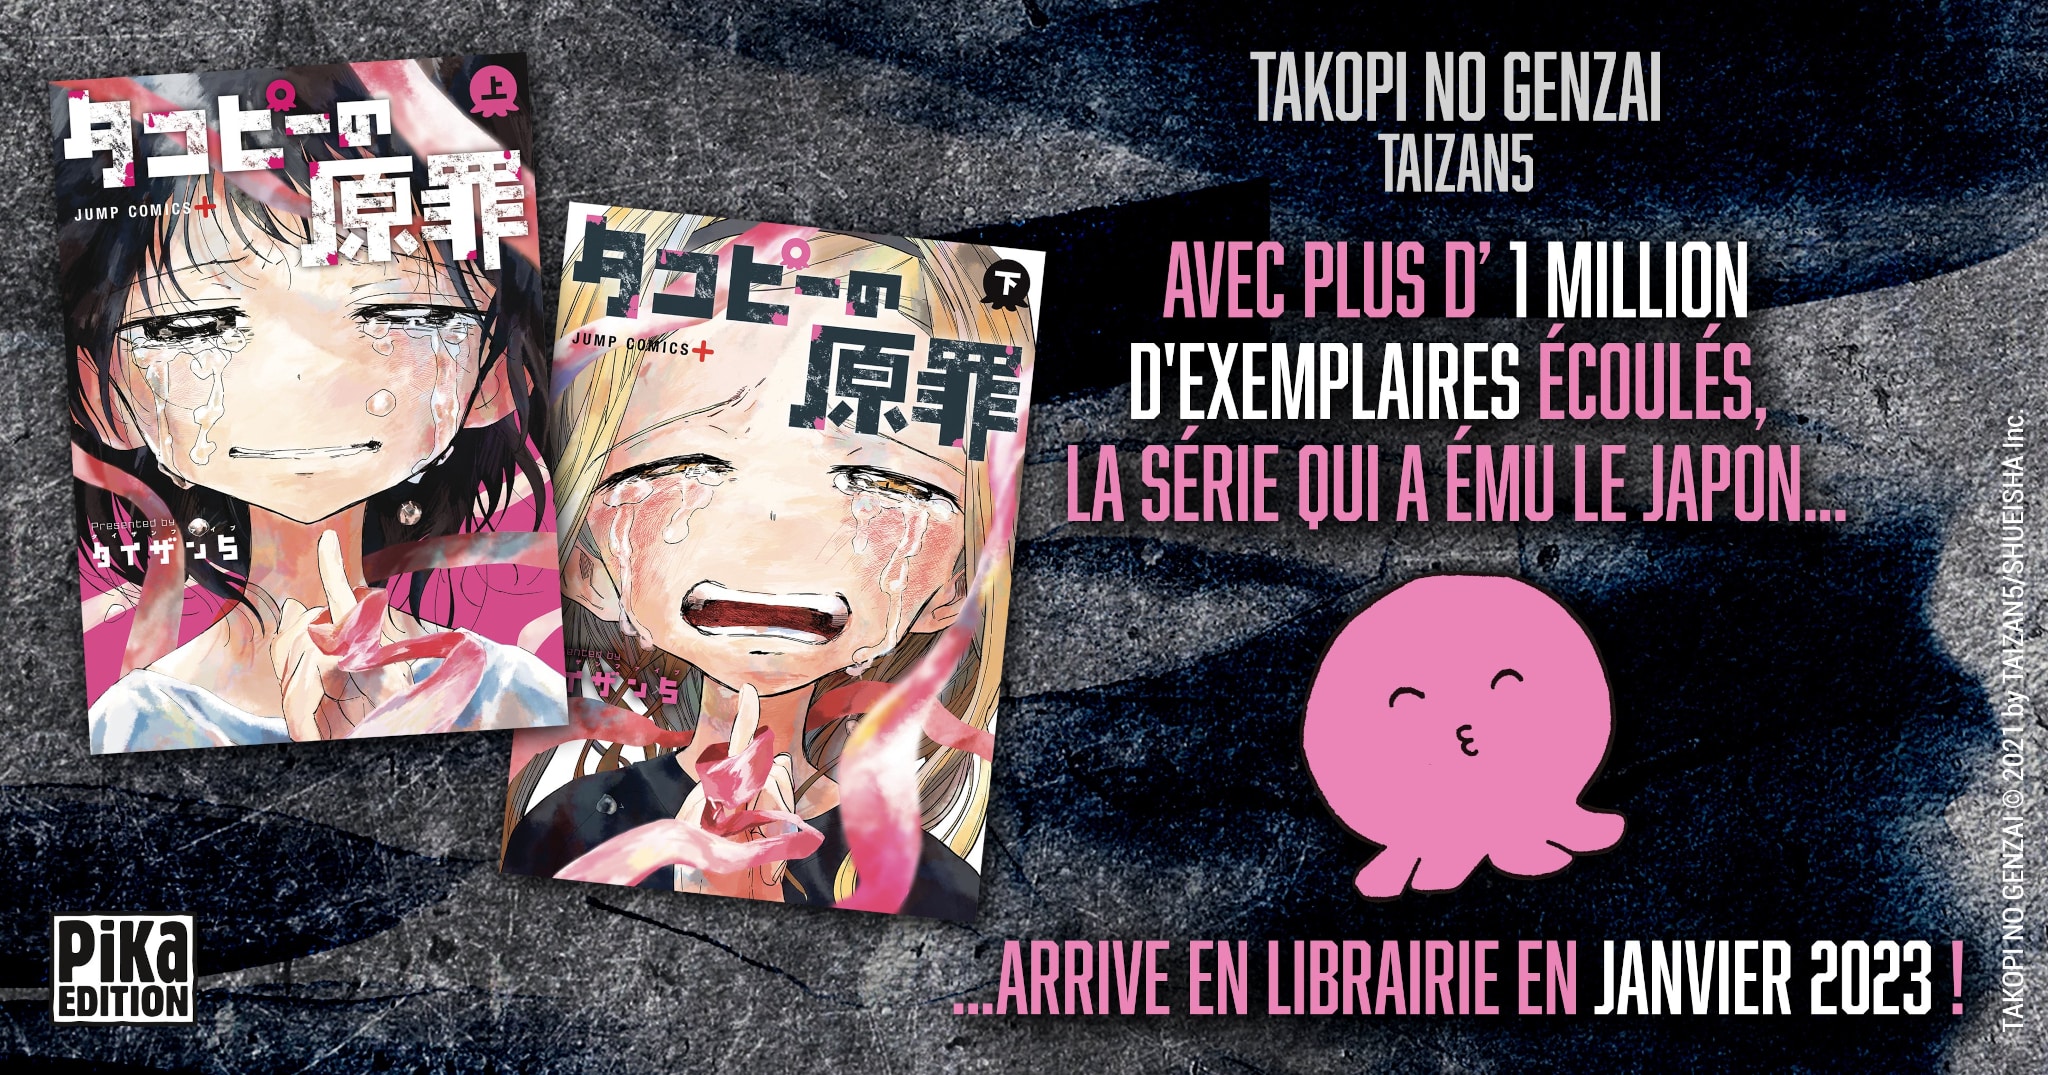 Annonce de la date de sortie en France du manga Takopi no Genzai chez Pika